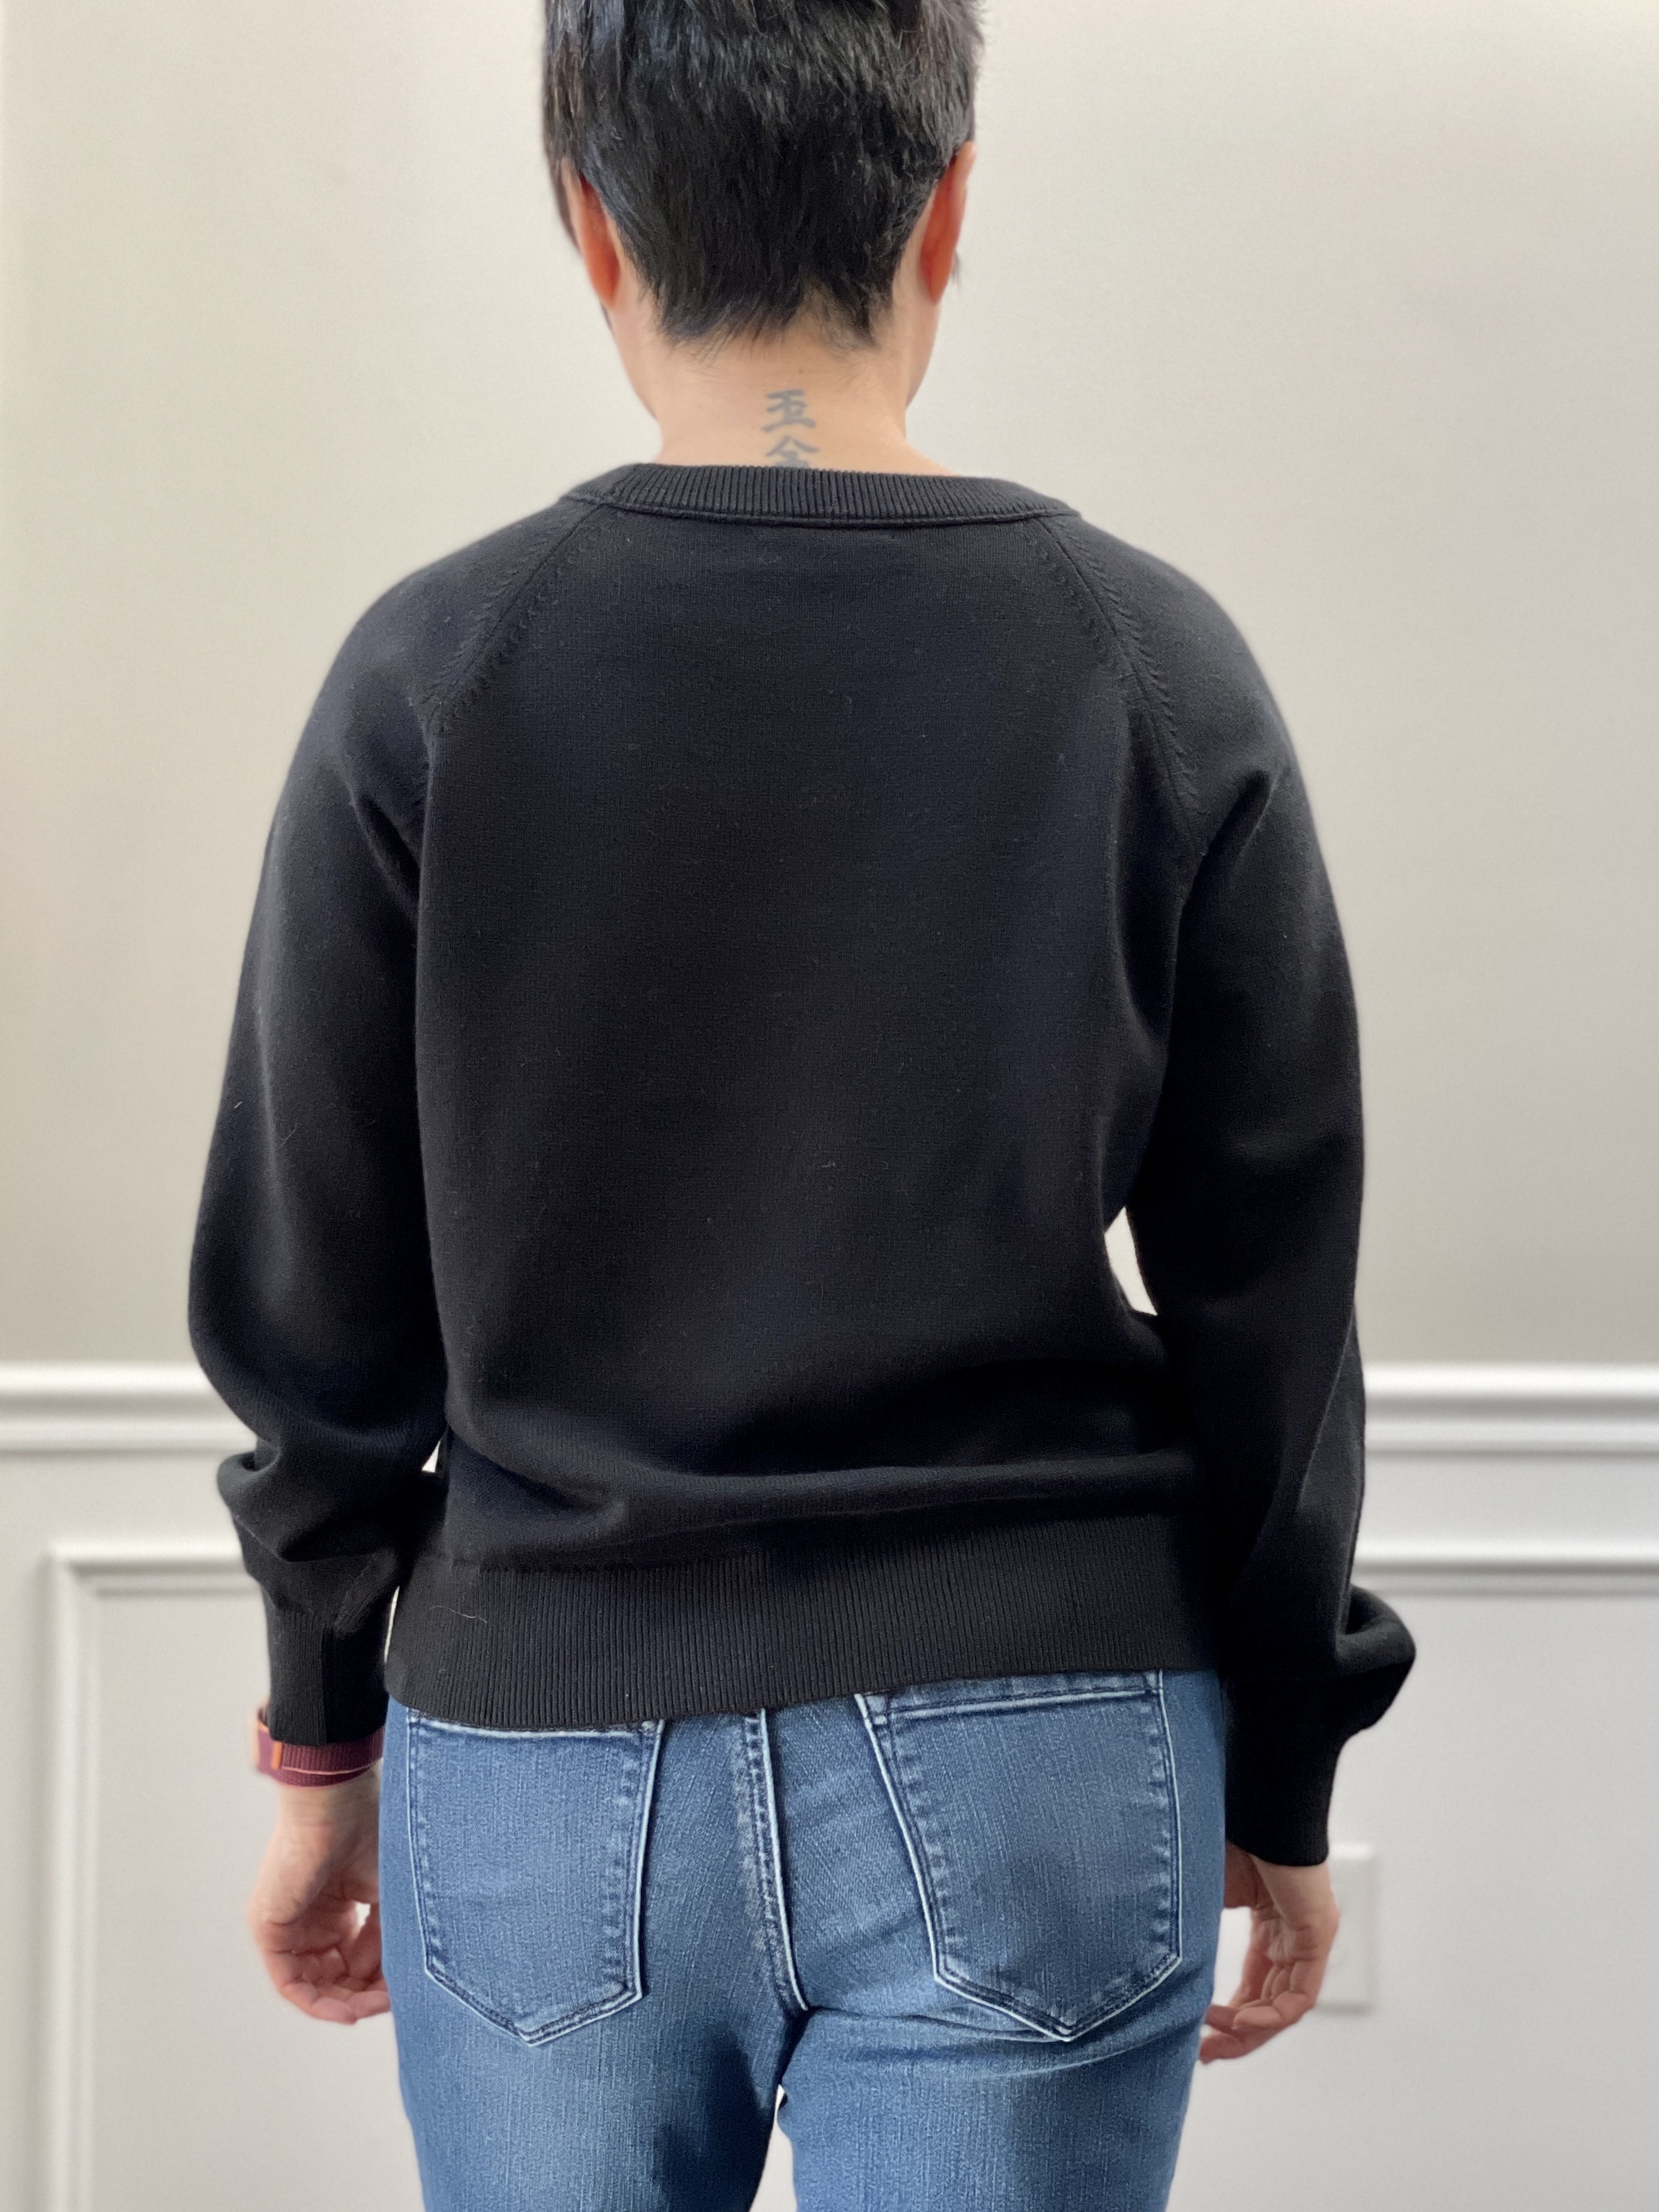 Men's Louis Vuitton Jumper Pullover Sweater Beige Crewneck Size  XXS,fits XS